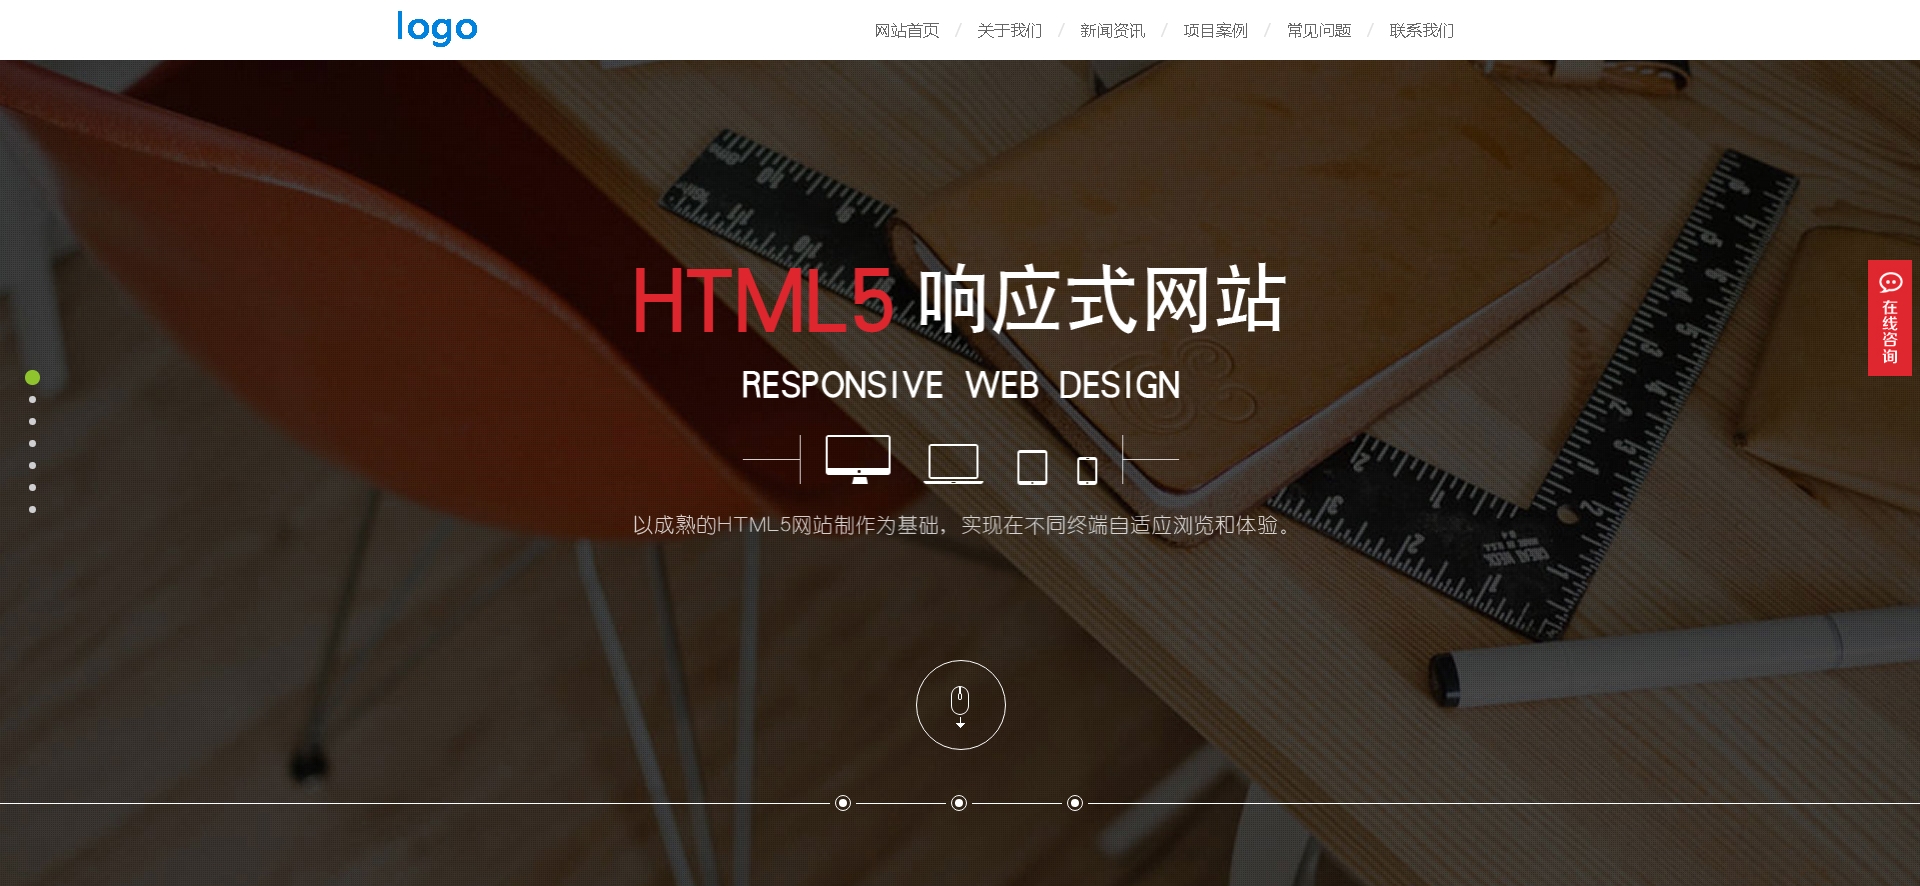 html5全屏的IT网络科技公司网站模板